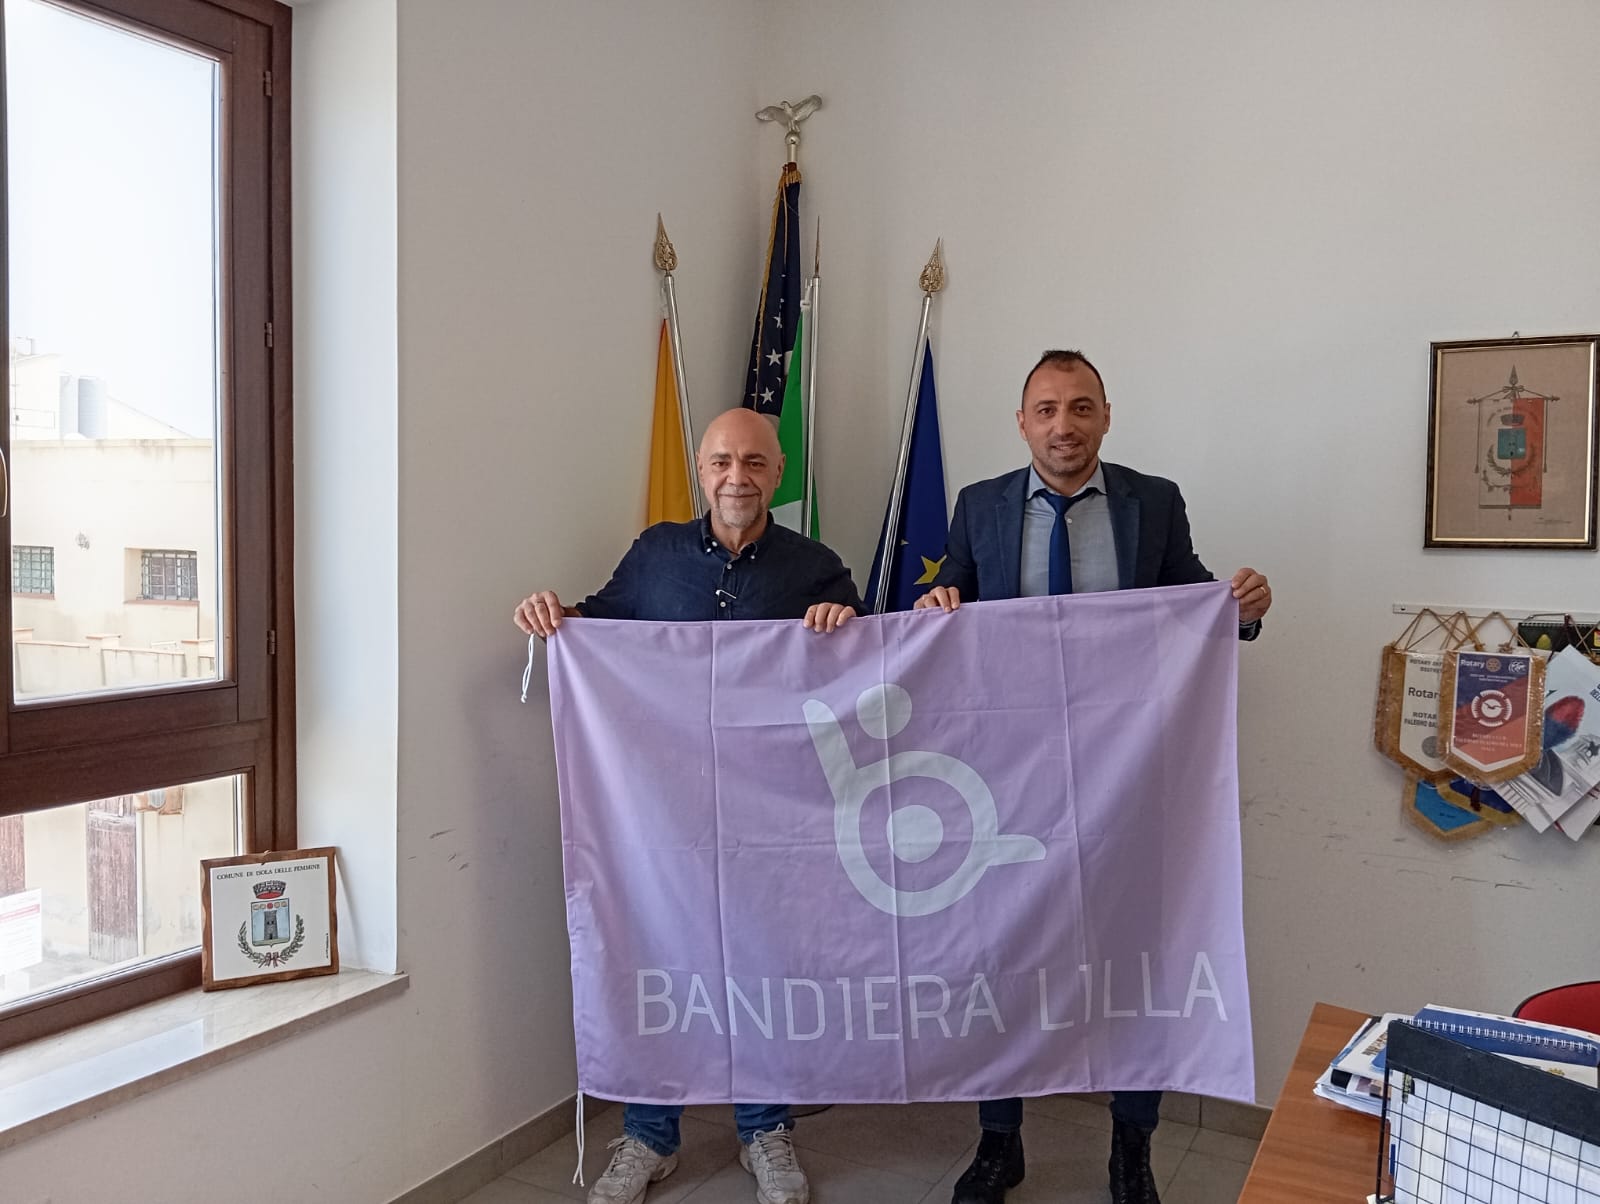 Il Sindaco e il presidente di Bandiera Lilla posano con in mano la Bandiera Lilla